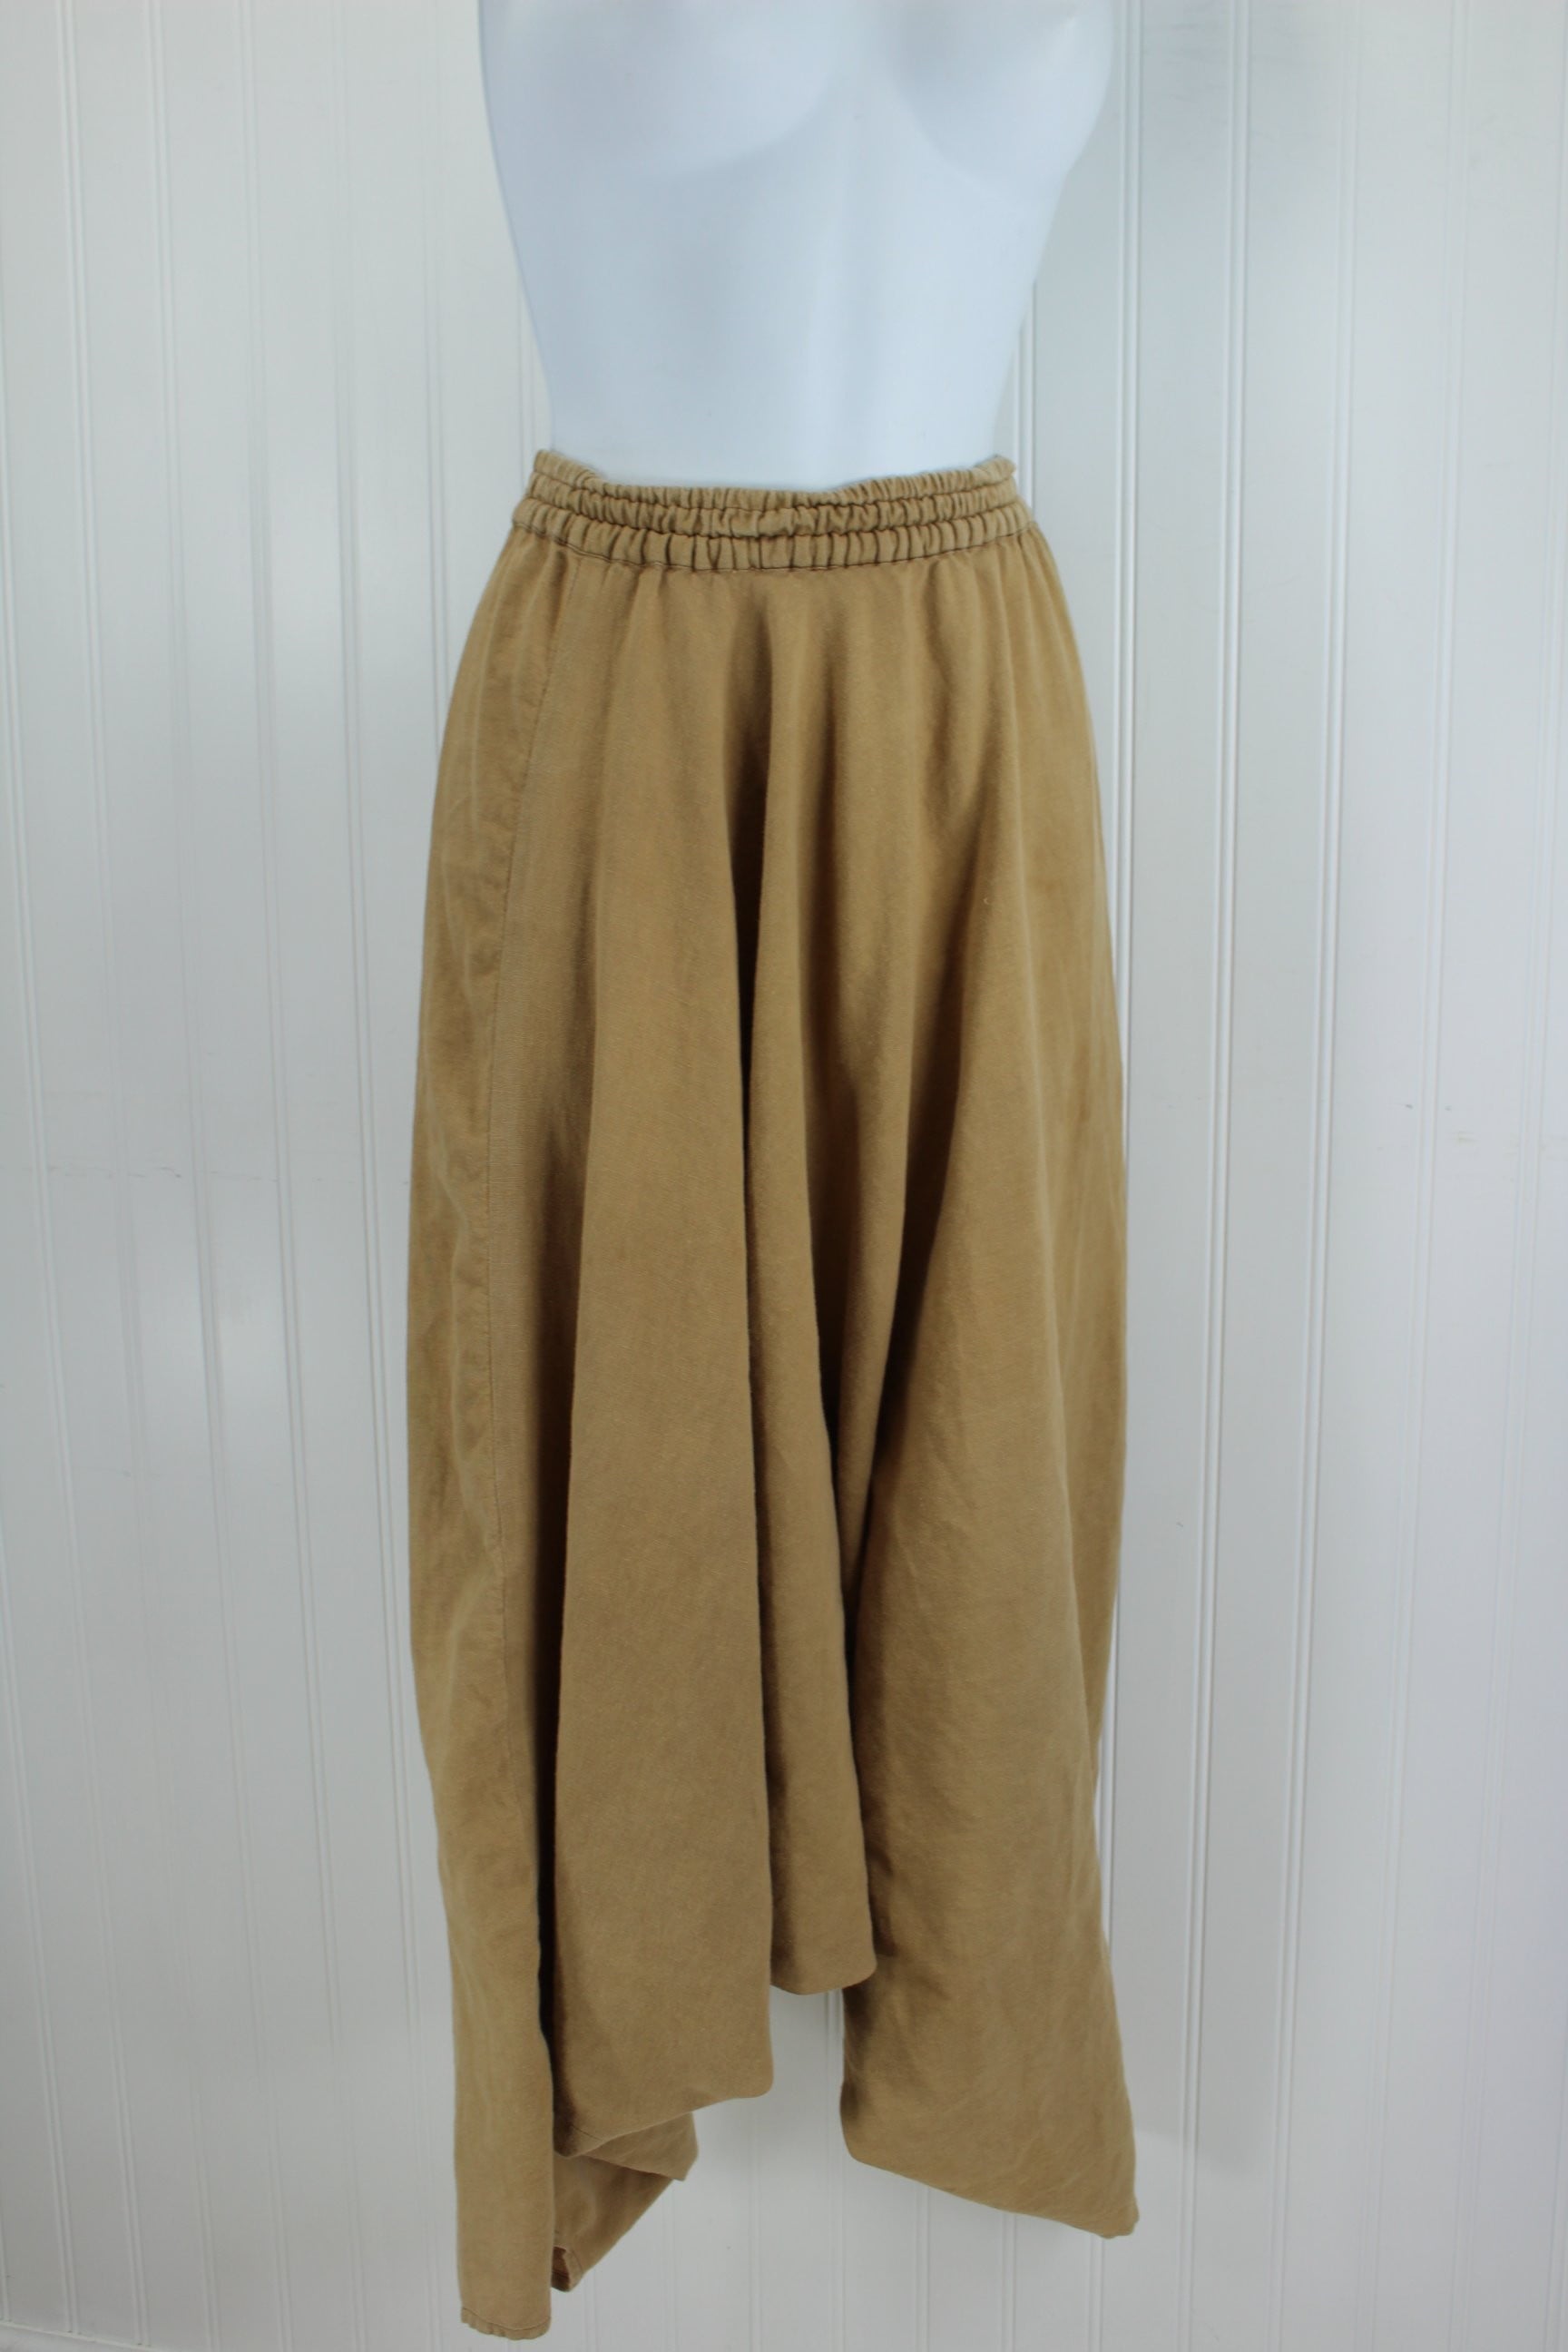 Vintage Lila Harem Aladdin Pants - Beige Cotton Linen